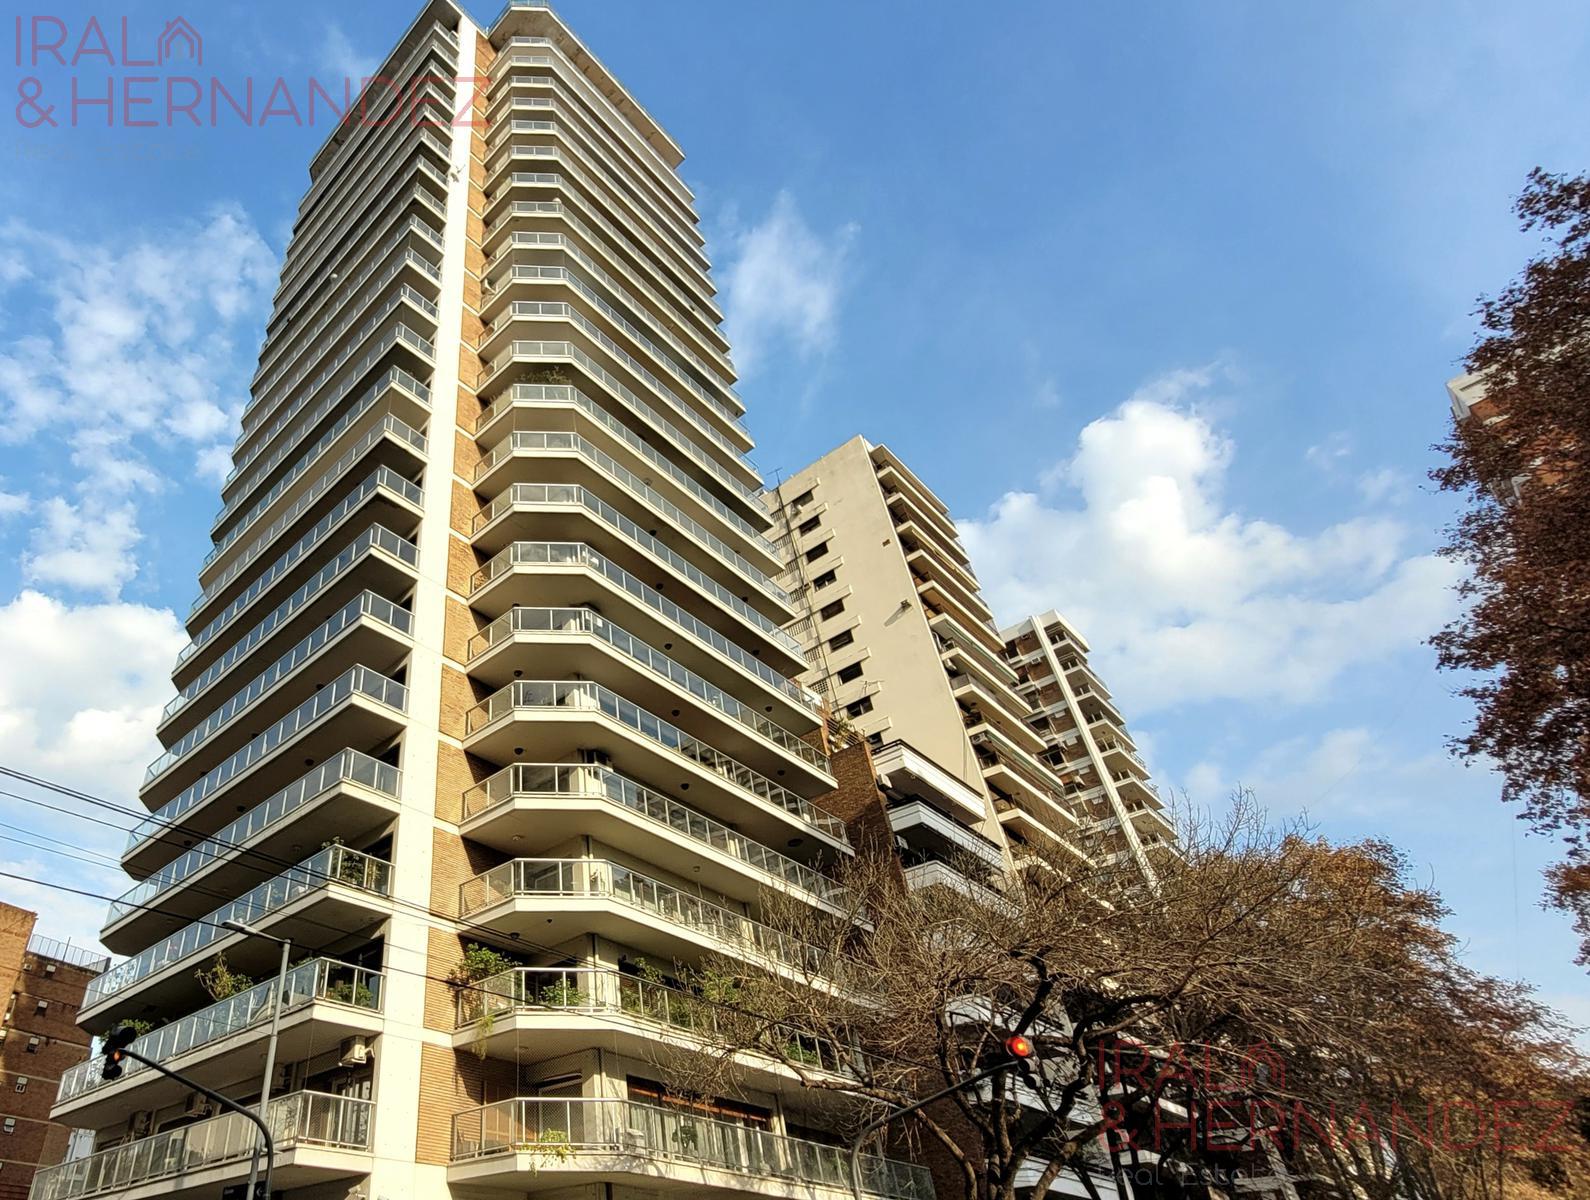 #5184147 | Rental | Apartment | Belgrano (Irala & Hernandez Real Estate)